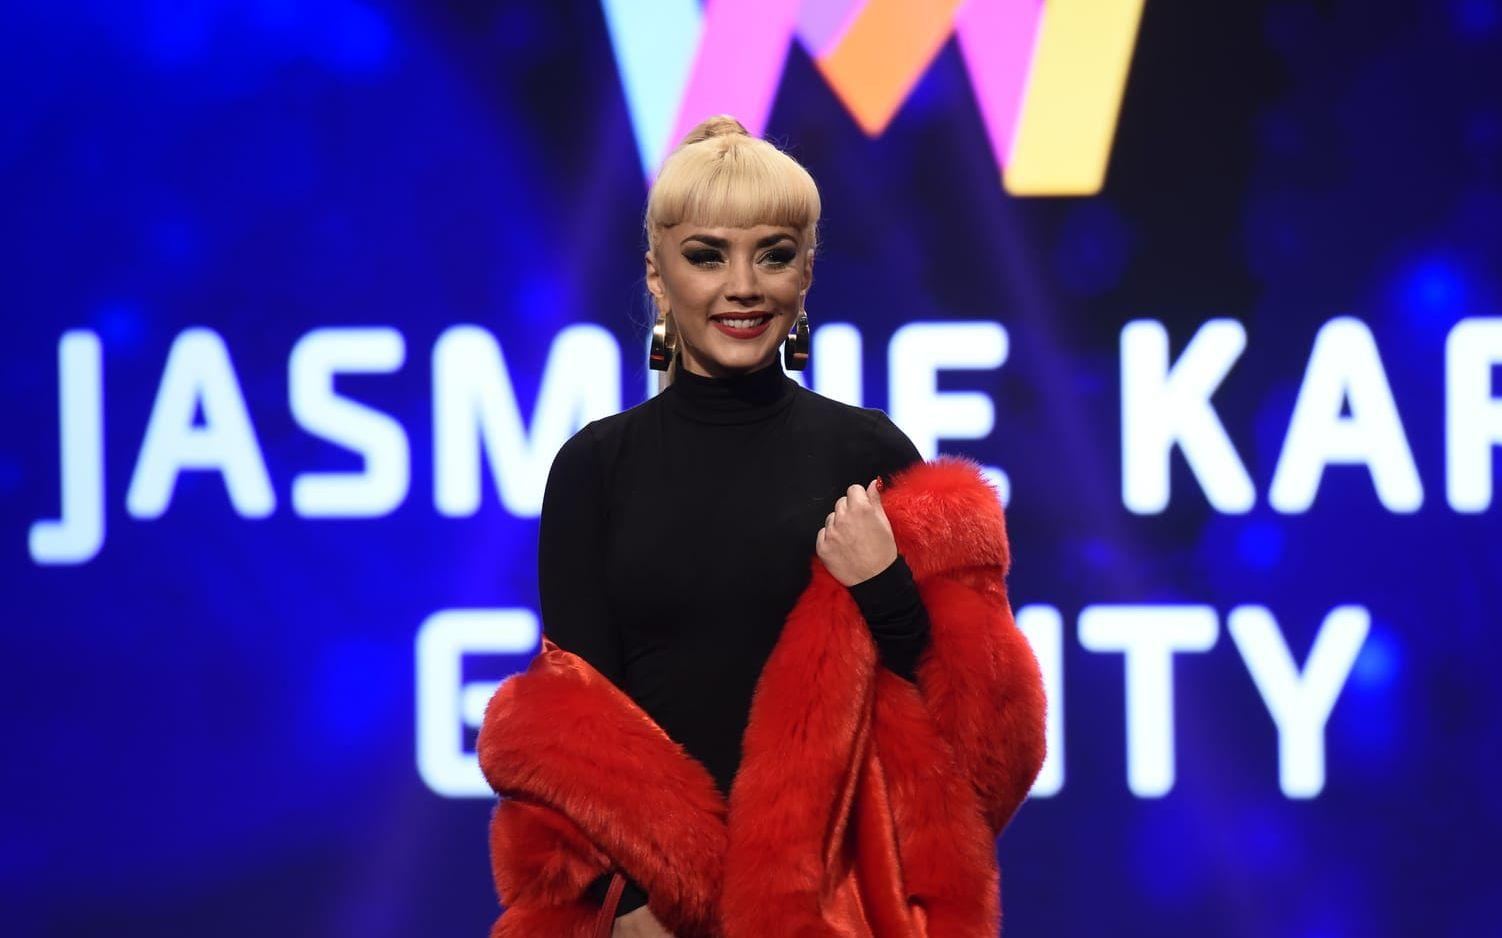 Jasmina Kara, en av artisterna i startfältet för Melodifestivalen 2017. Bild: Jessica Gow: TT